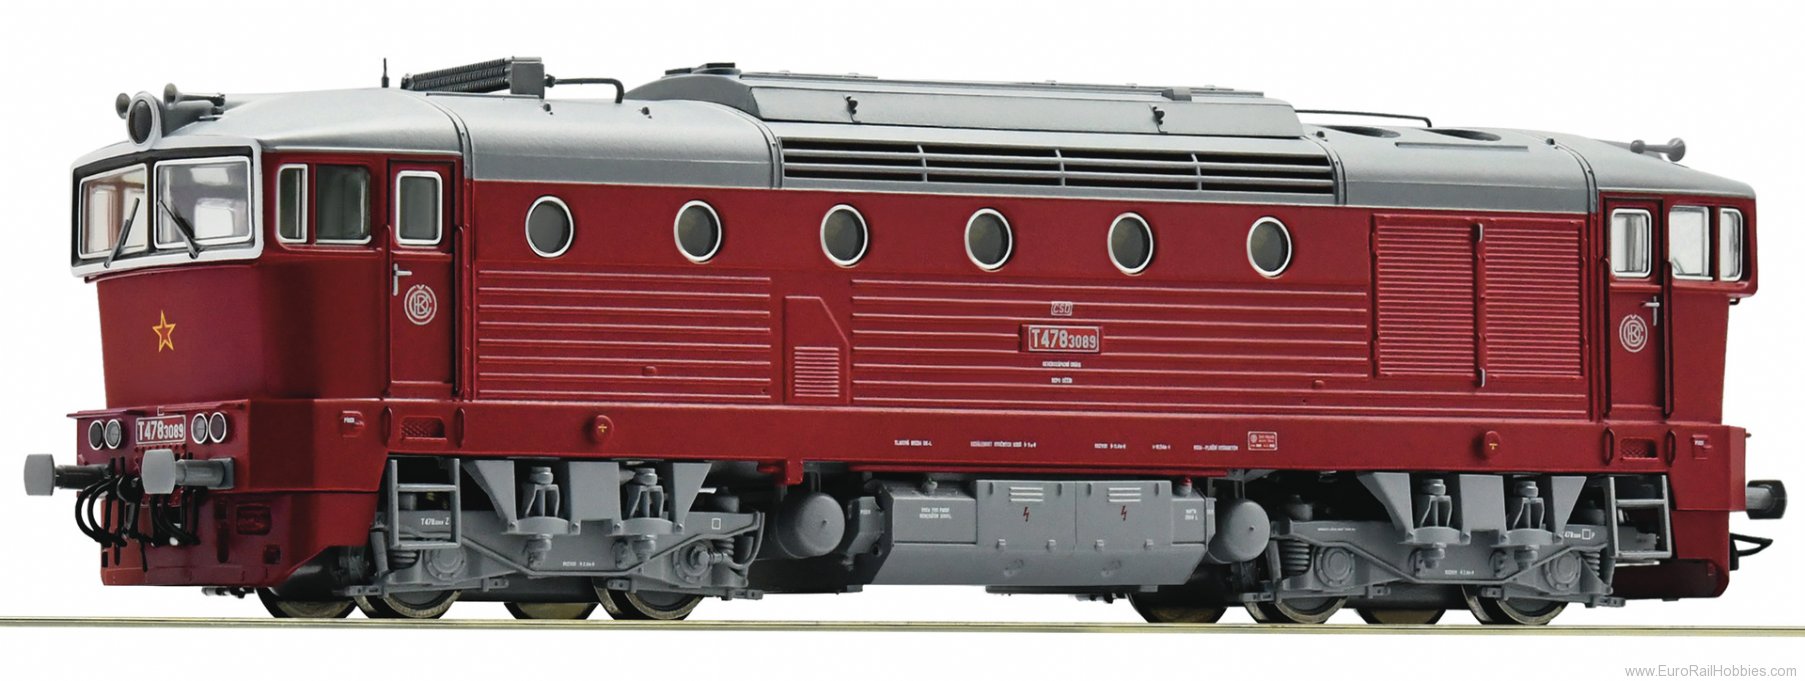 Roco 71020 CSD Diesel locomotive T 478.3089,